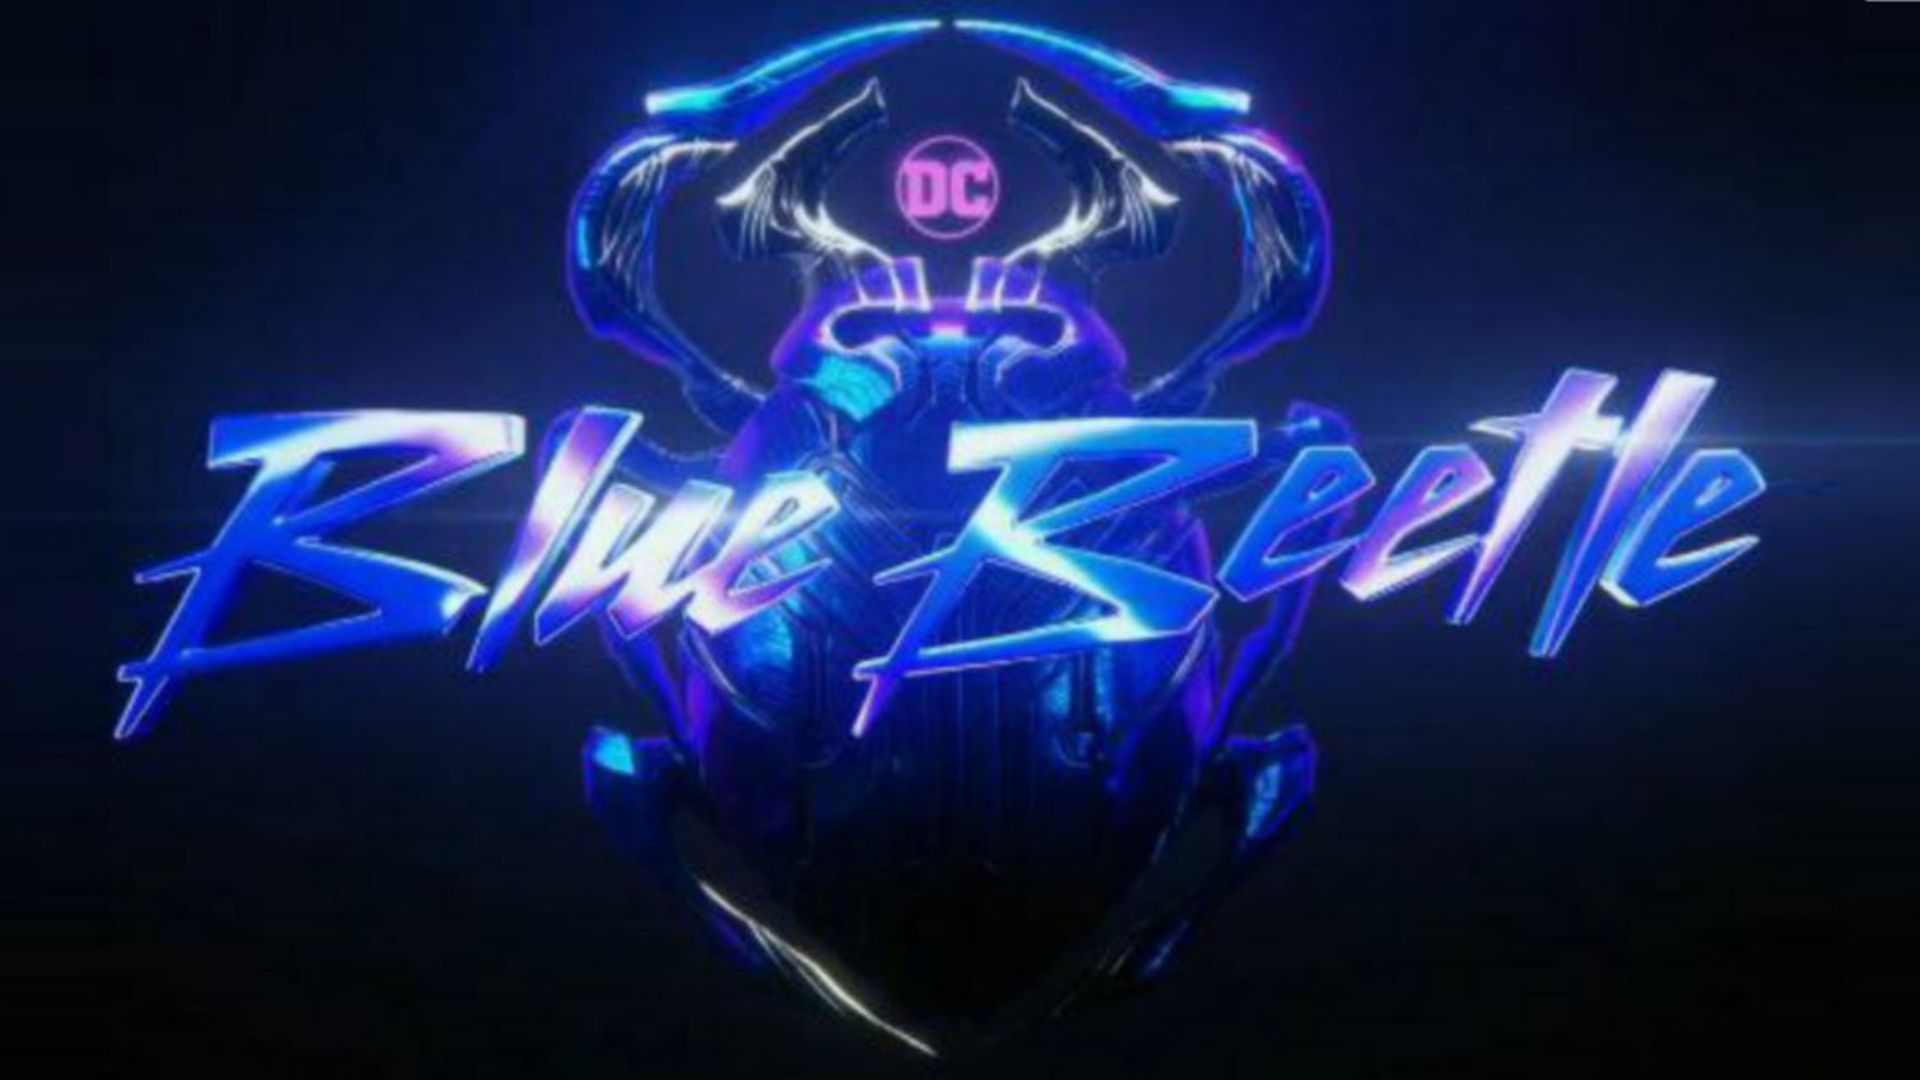 imagen del logotipo oficial de la pelicula de superhéroes blue Beetle